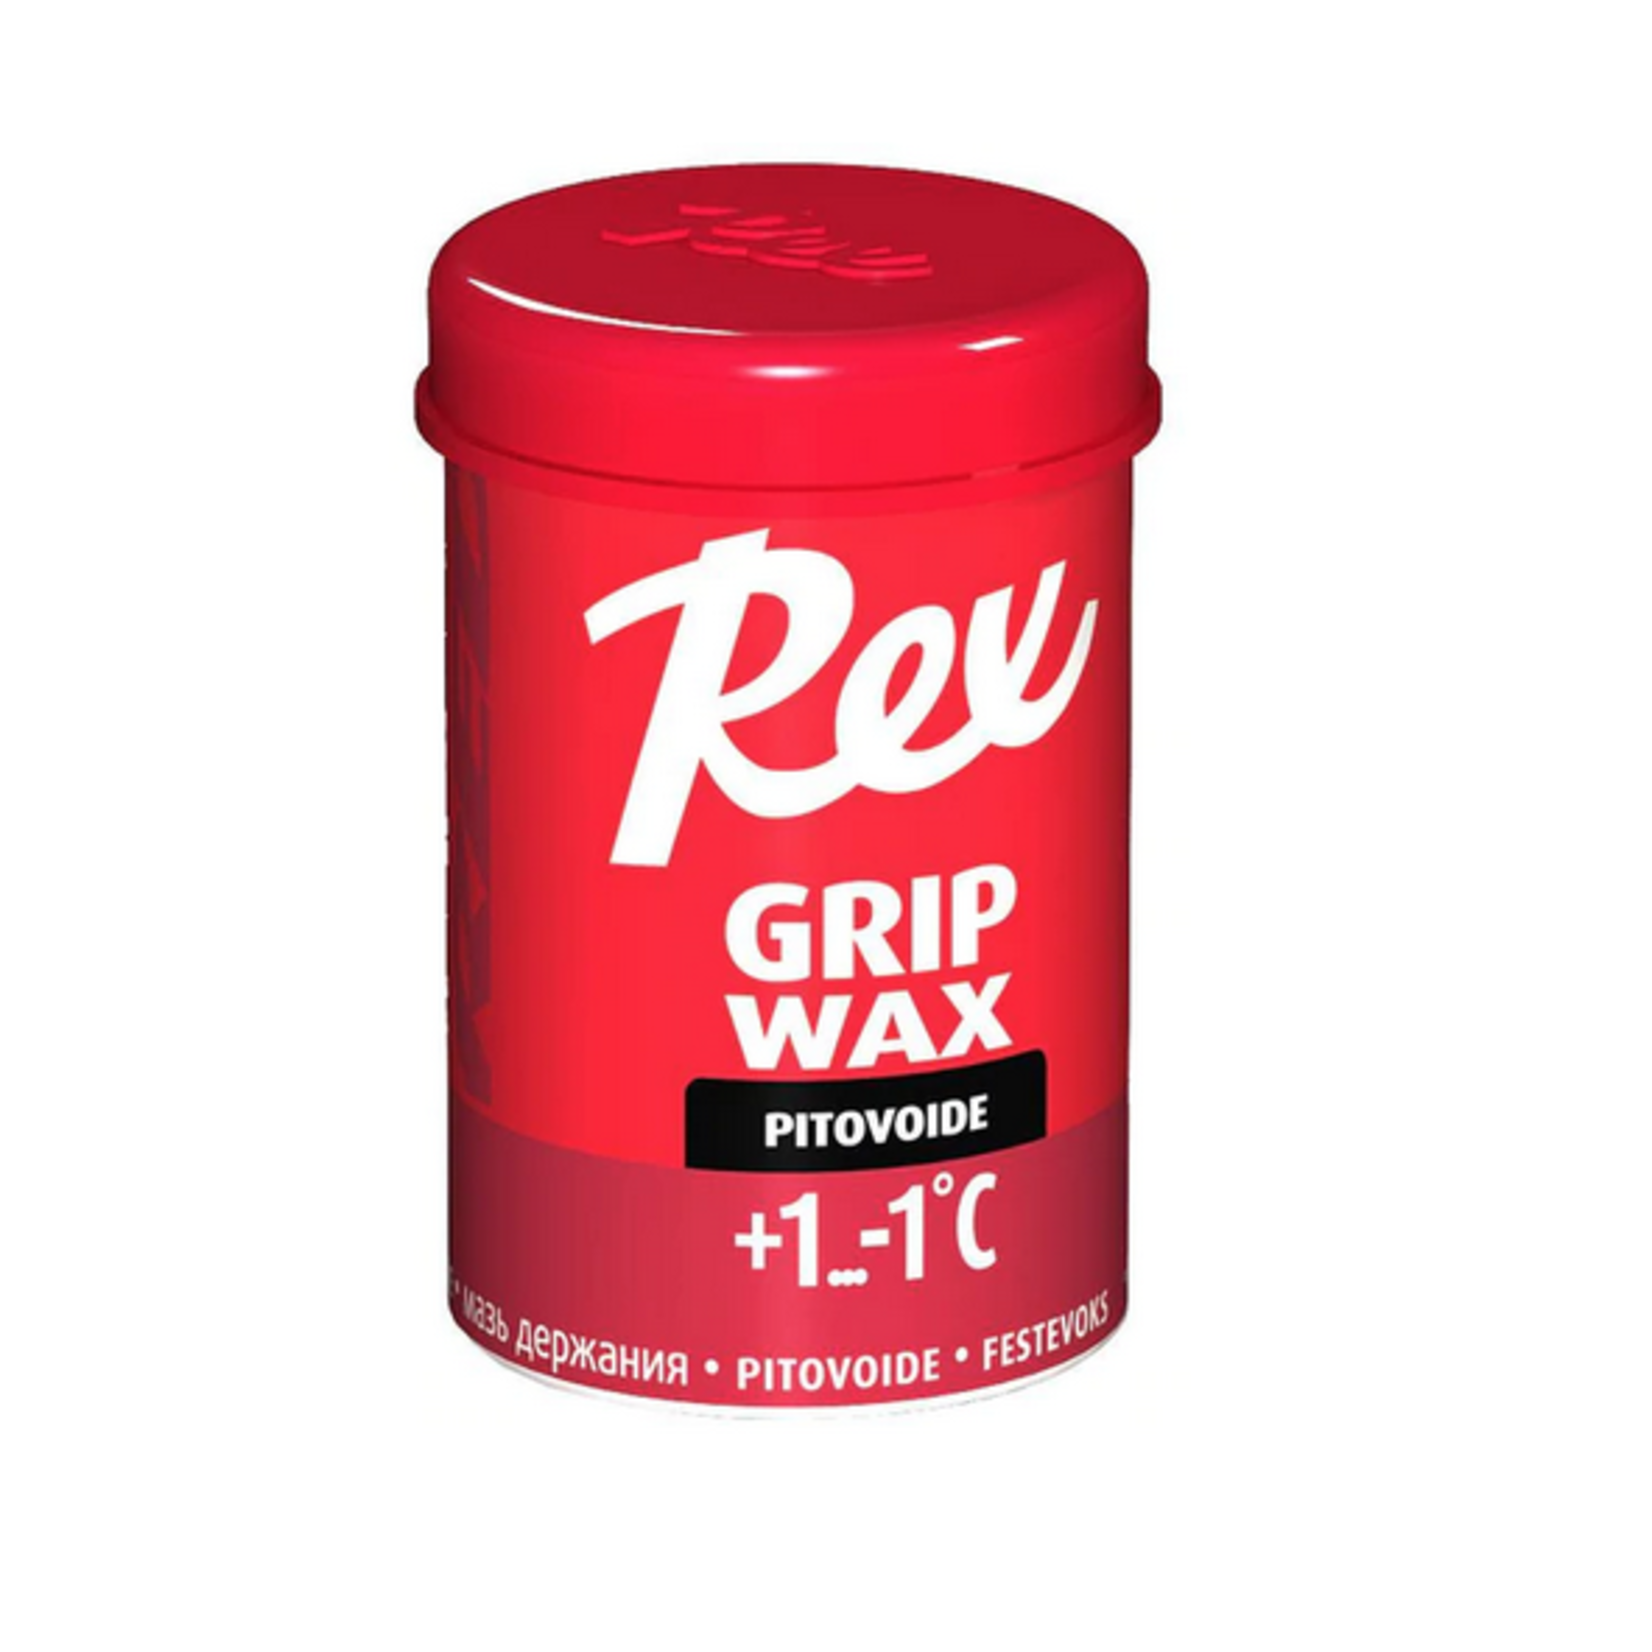 Rex Grip